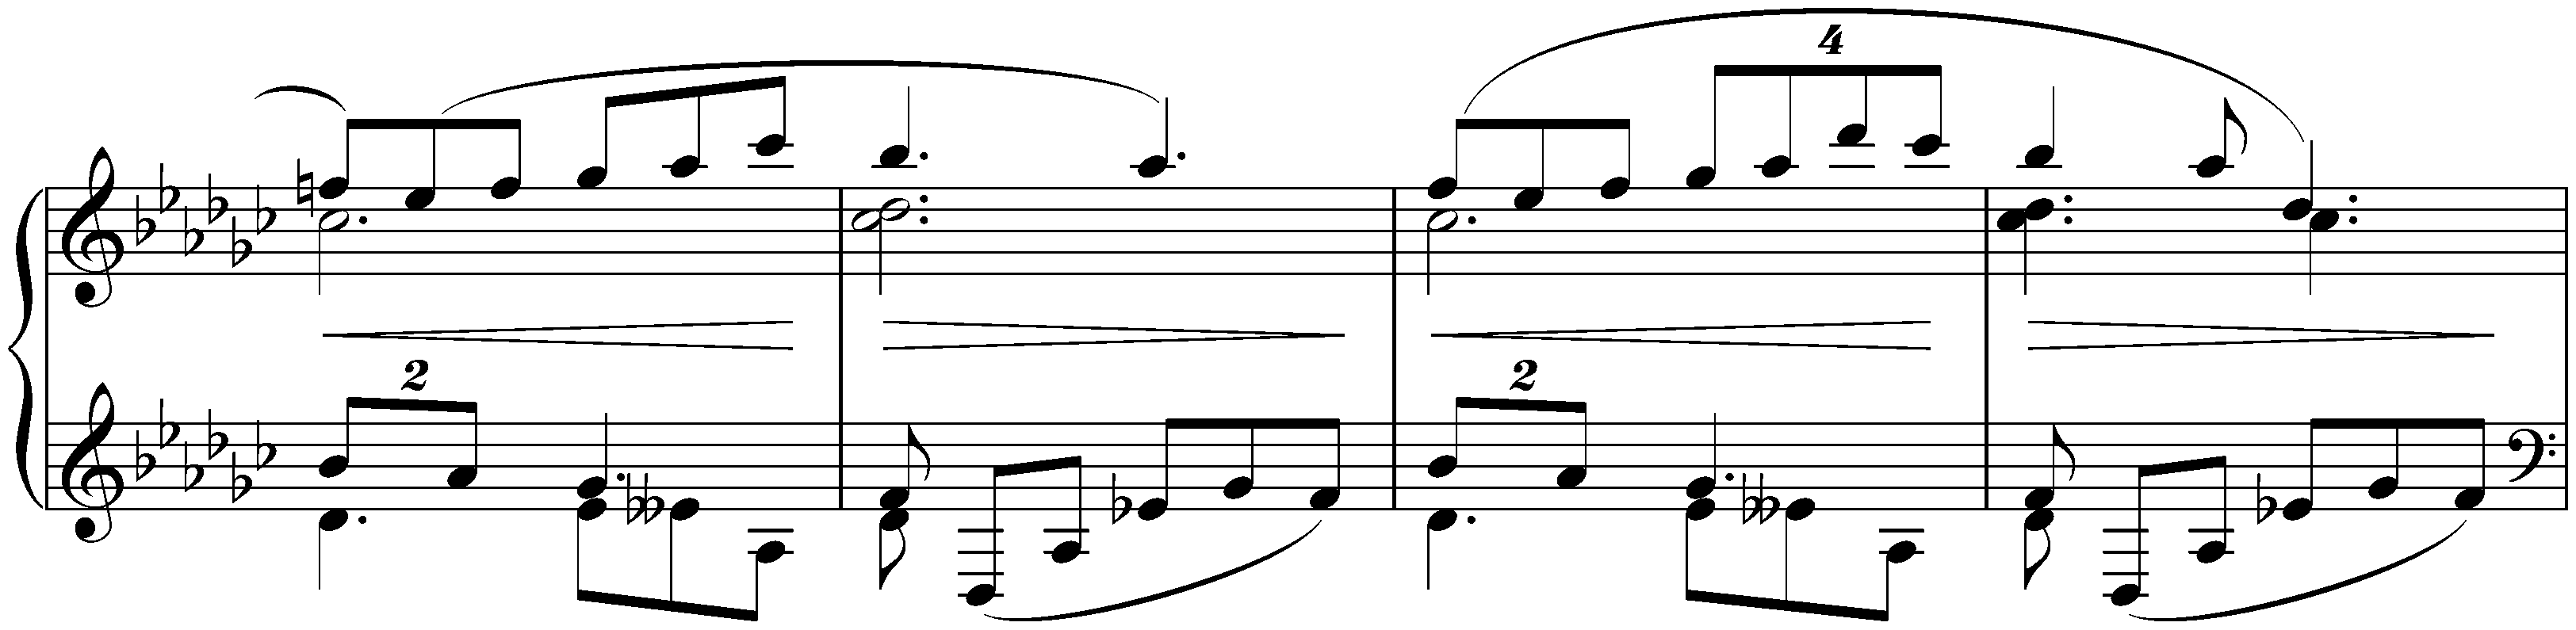 Allegro appassionato in E-flat minor, op. 4